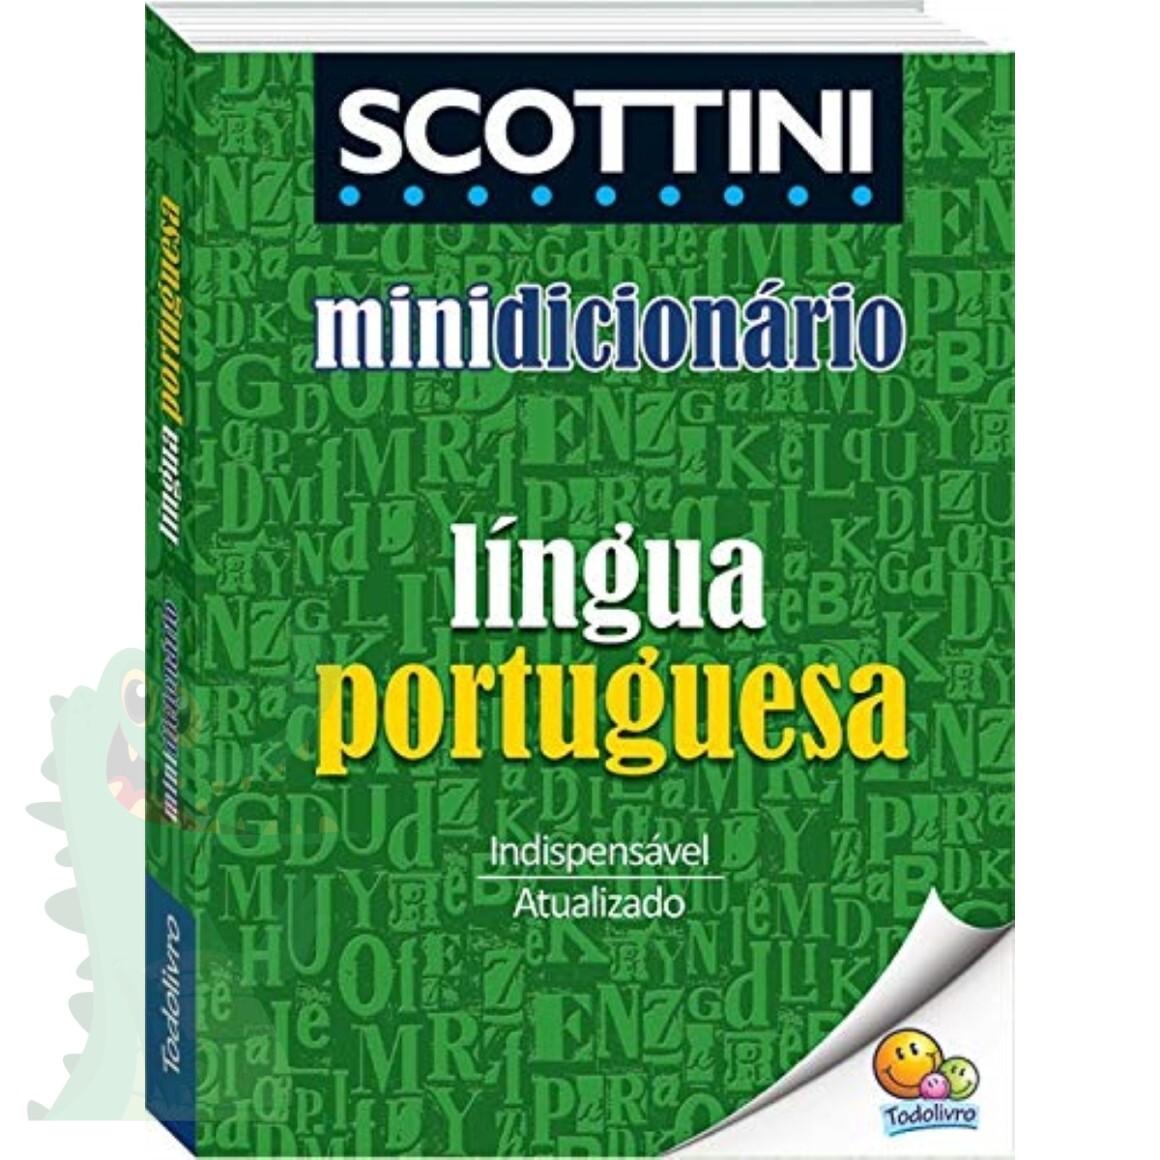 Grátis - Dicionário de Abreviaturas português inglês PTBR->EN - NF